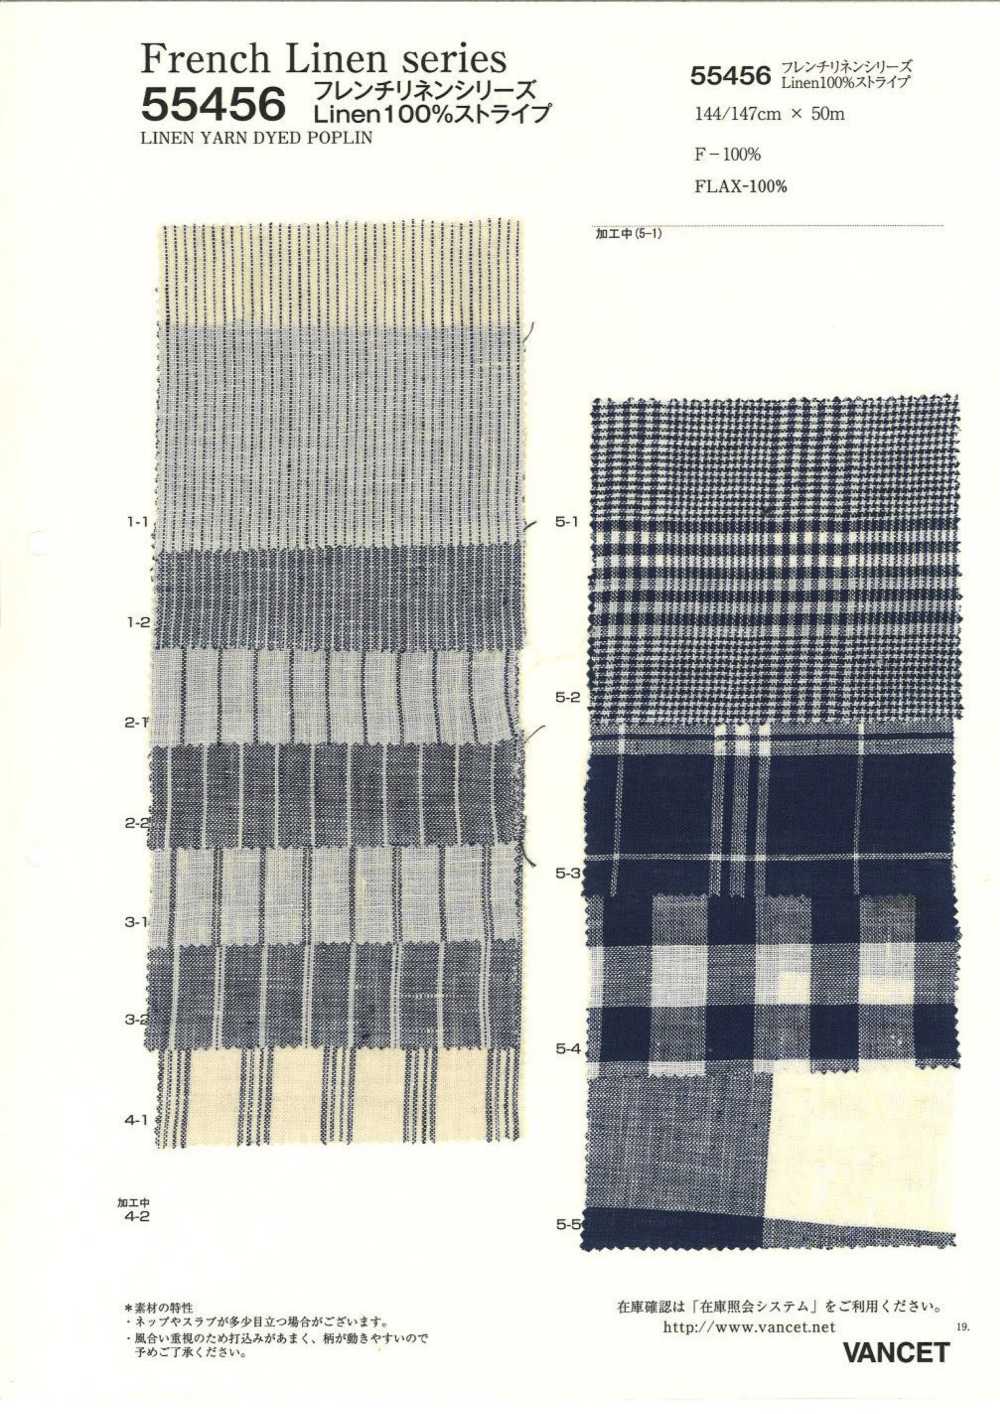 55456 Französische Leinenserie, Leinen, 100 % Gestreift[Textilgewebe] VANCET